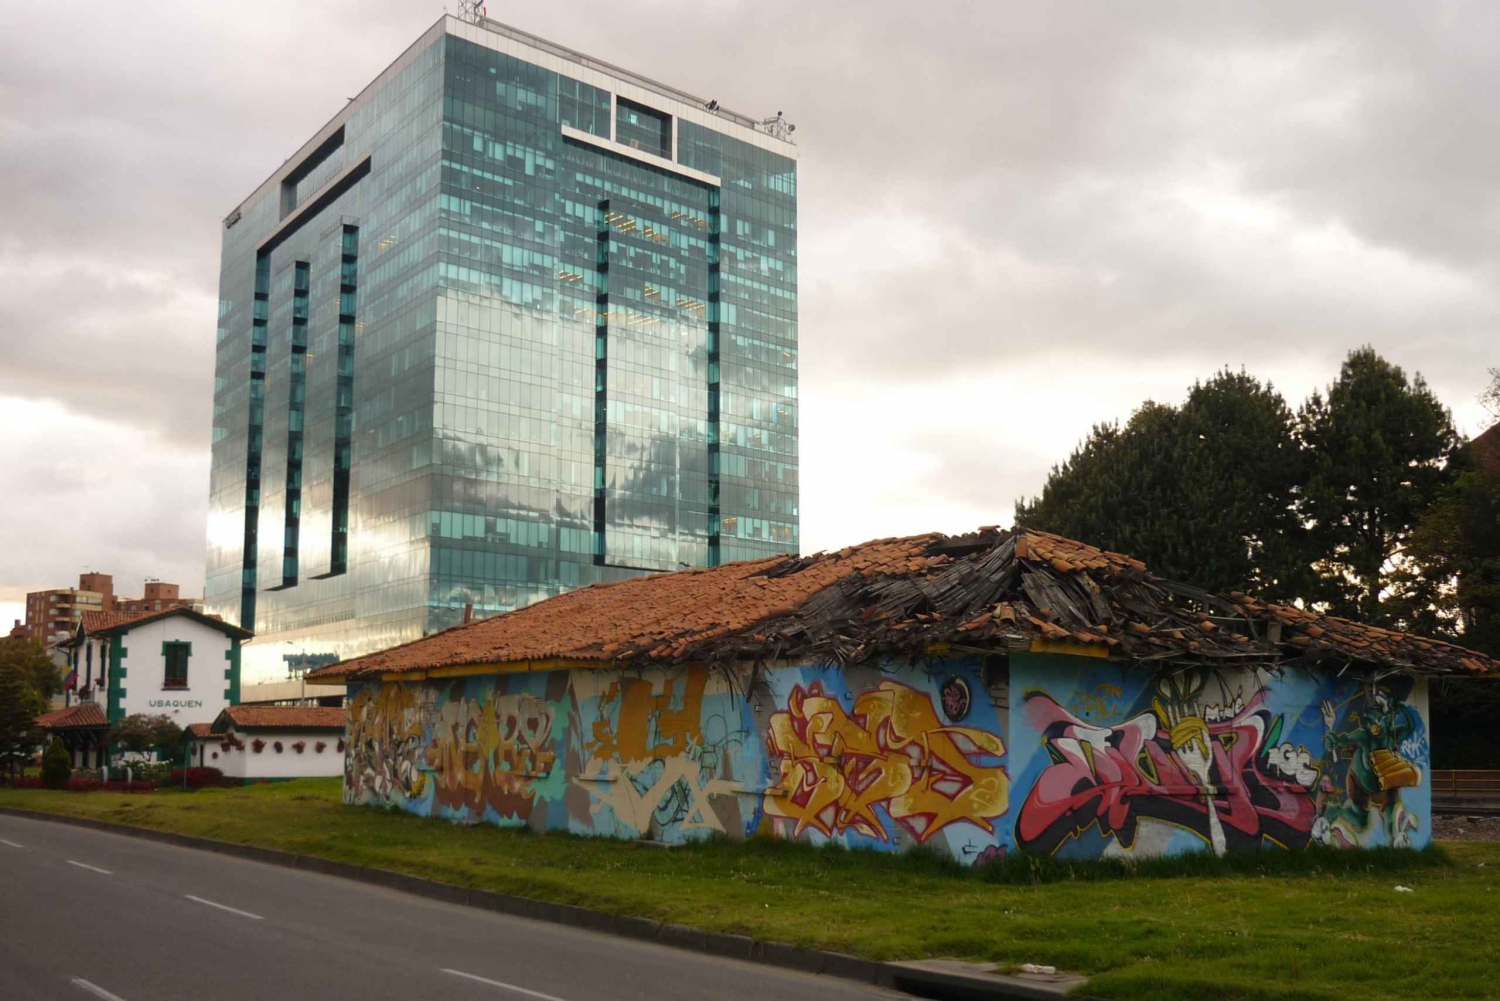 Bogotá: Panoramic City Tour